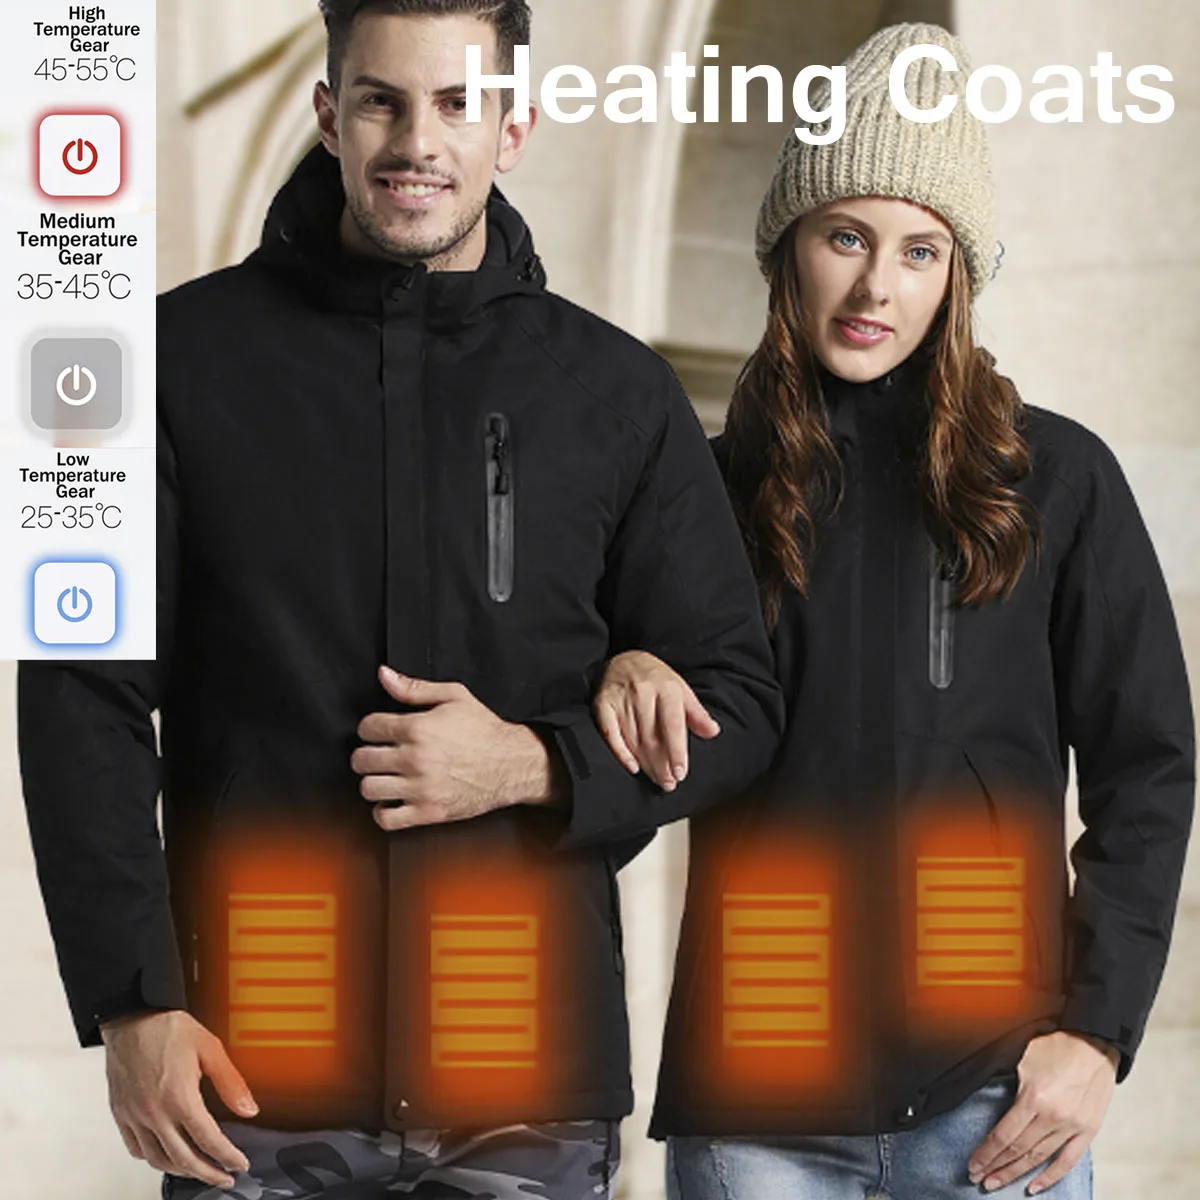 Водонепроницаемый Электрический нагрев Heaed теплый USB с капюшоном для путешествий мужские пальто куртки моющиеся зимние походные куртки для девушек и женщин